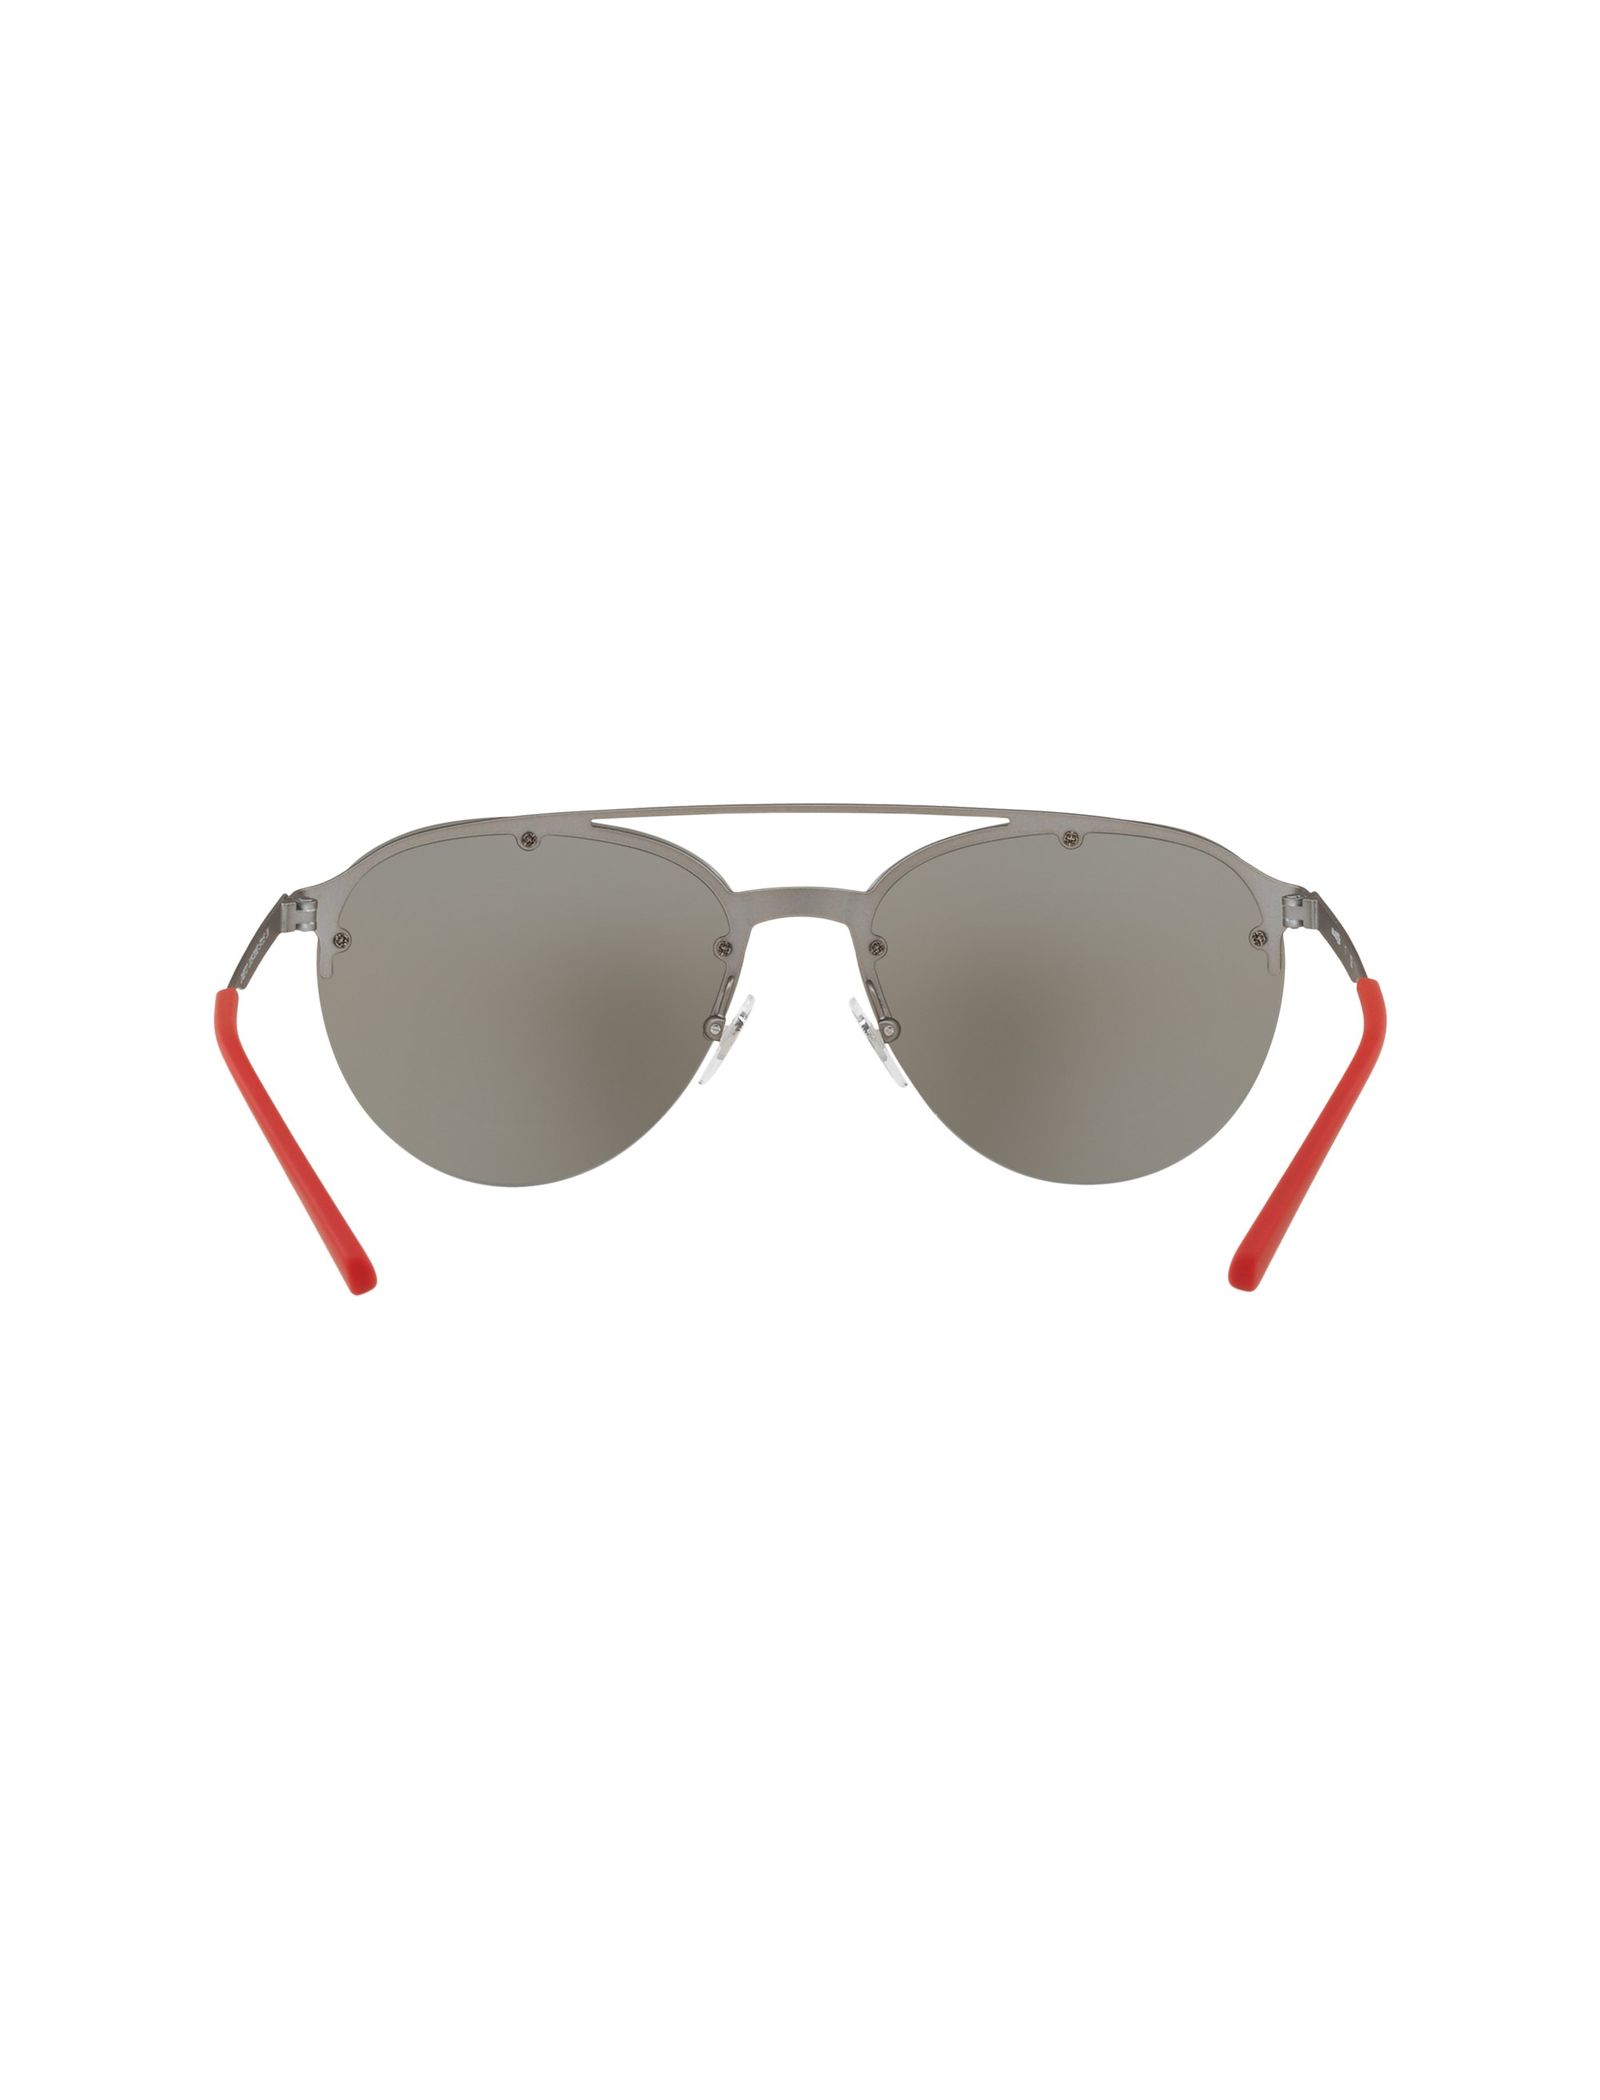 عینک آفتابی خلبانی مردانه - آرنت - طوسي - 5